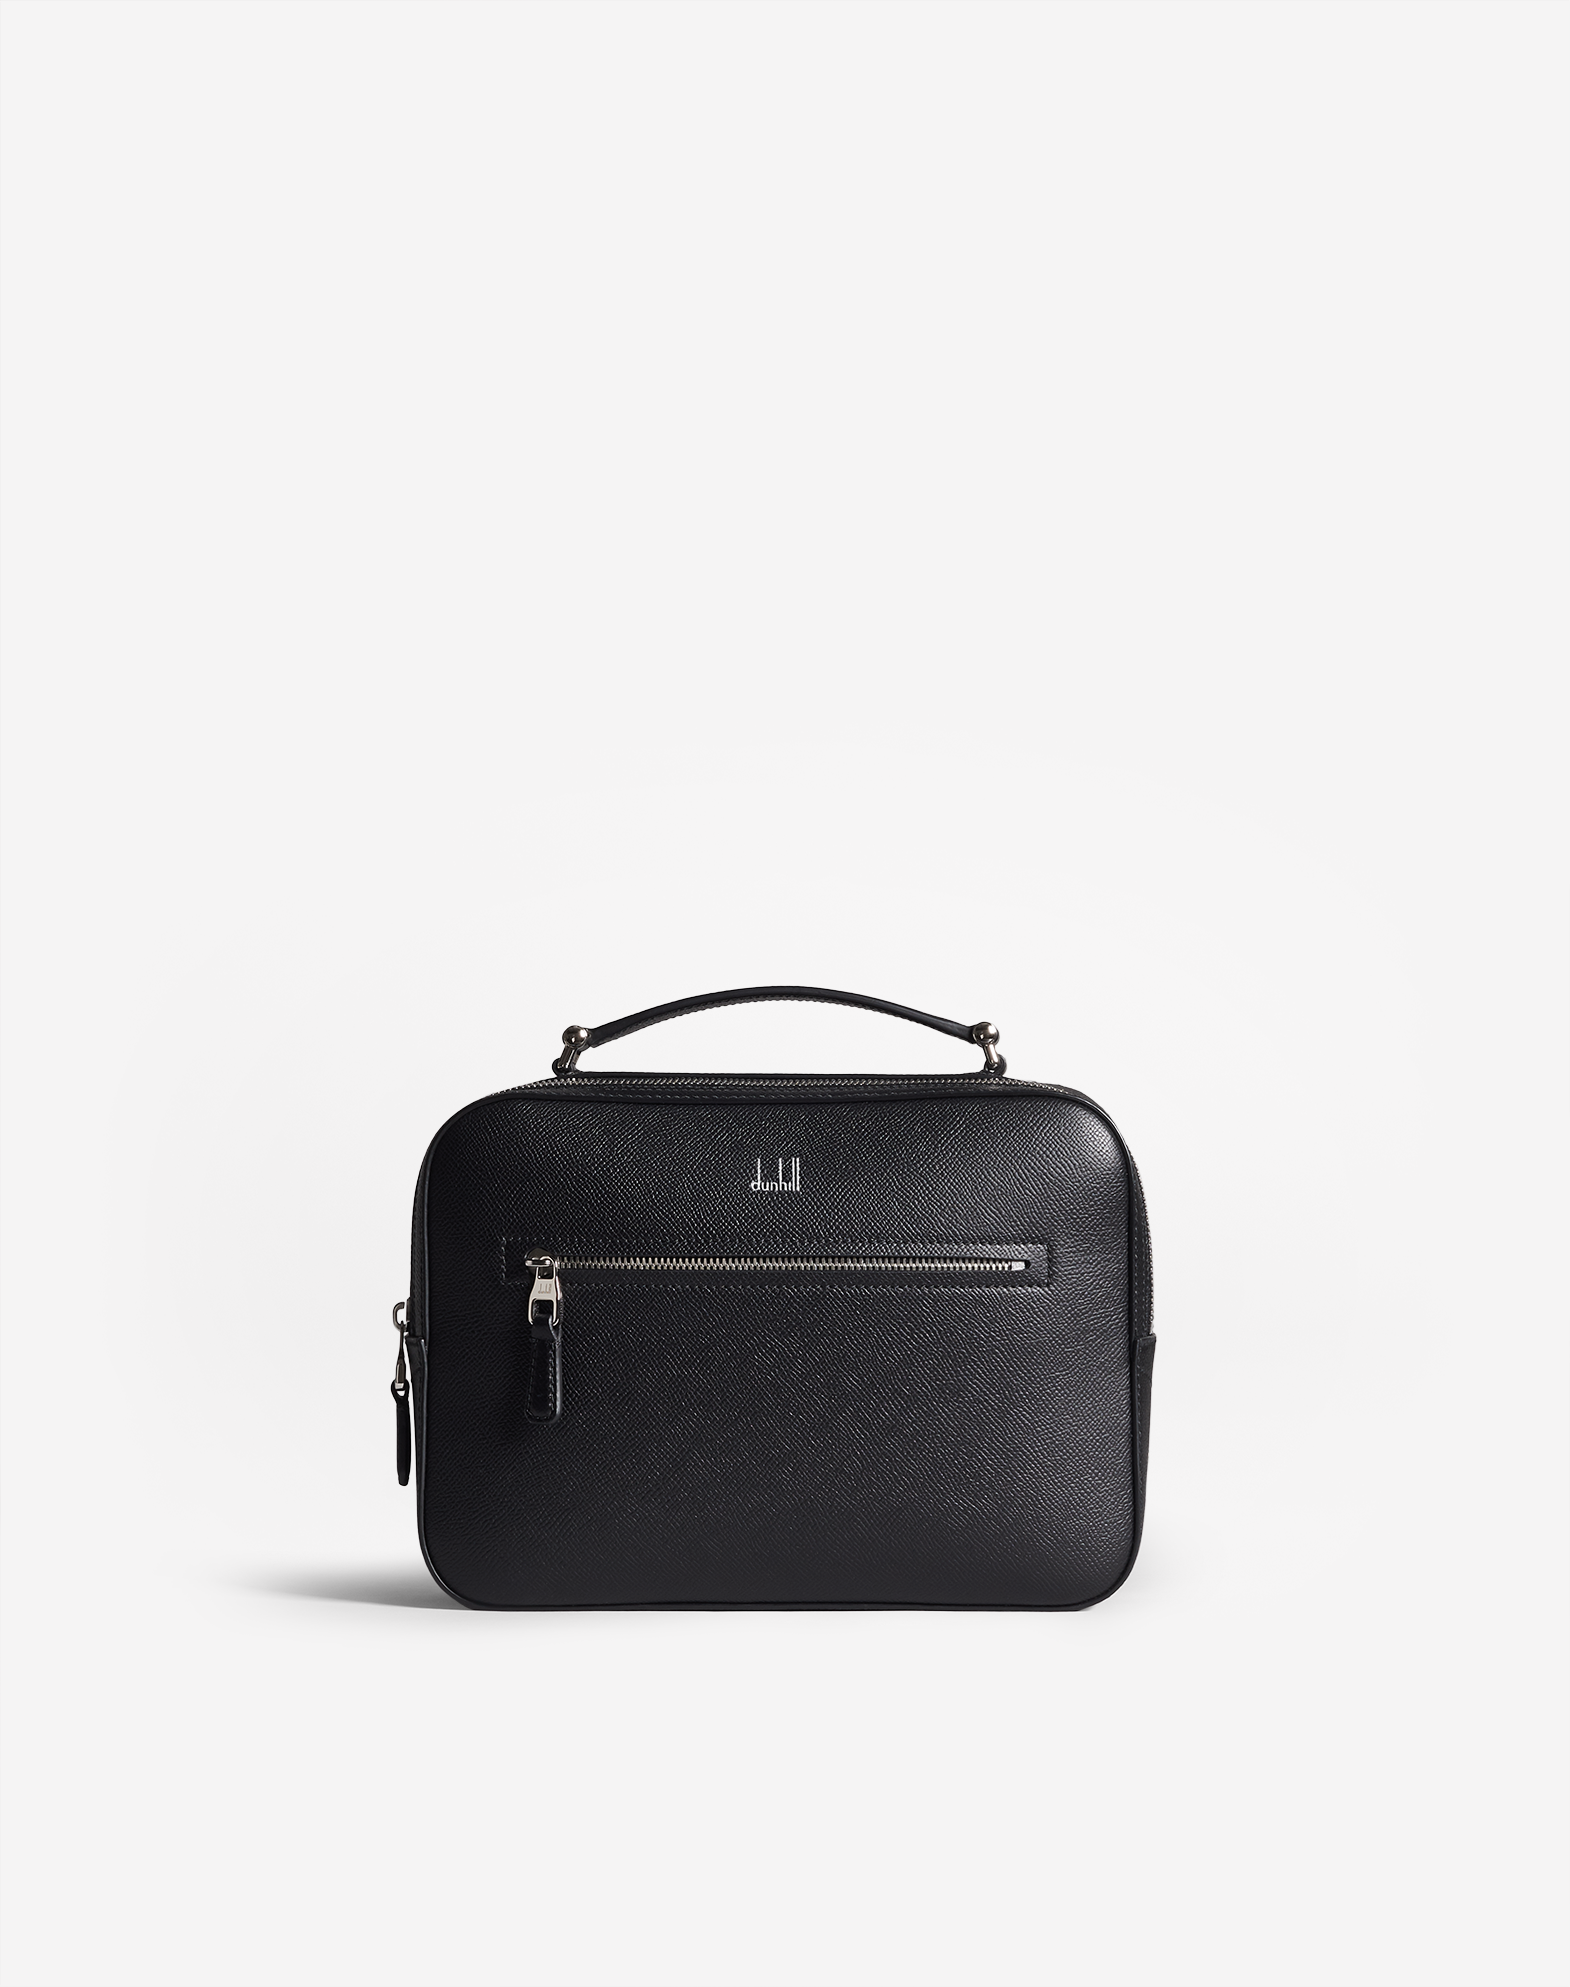 Dunhill Cadogan Top Handle Bag In Black